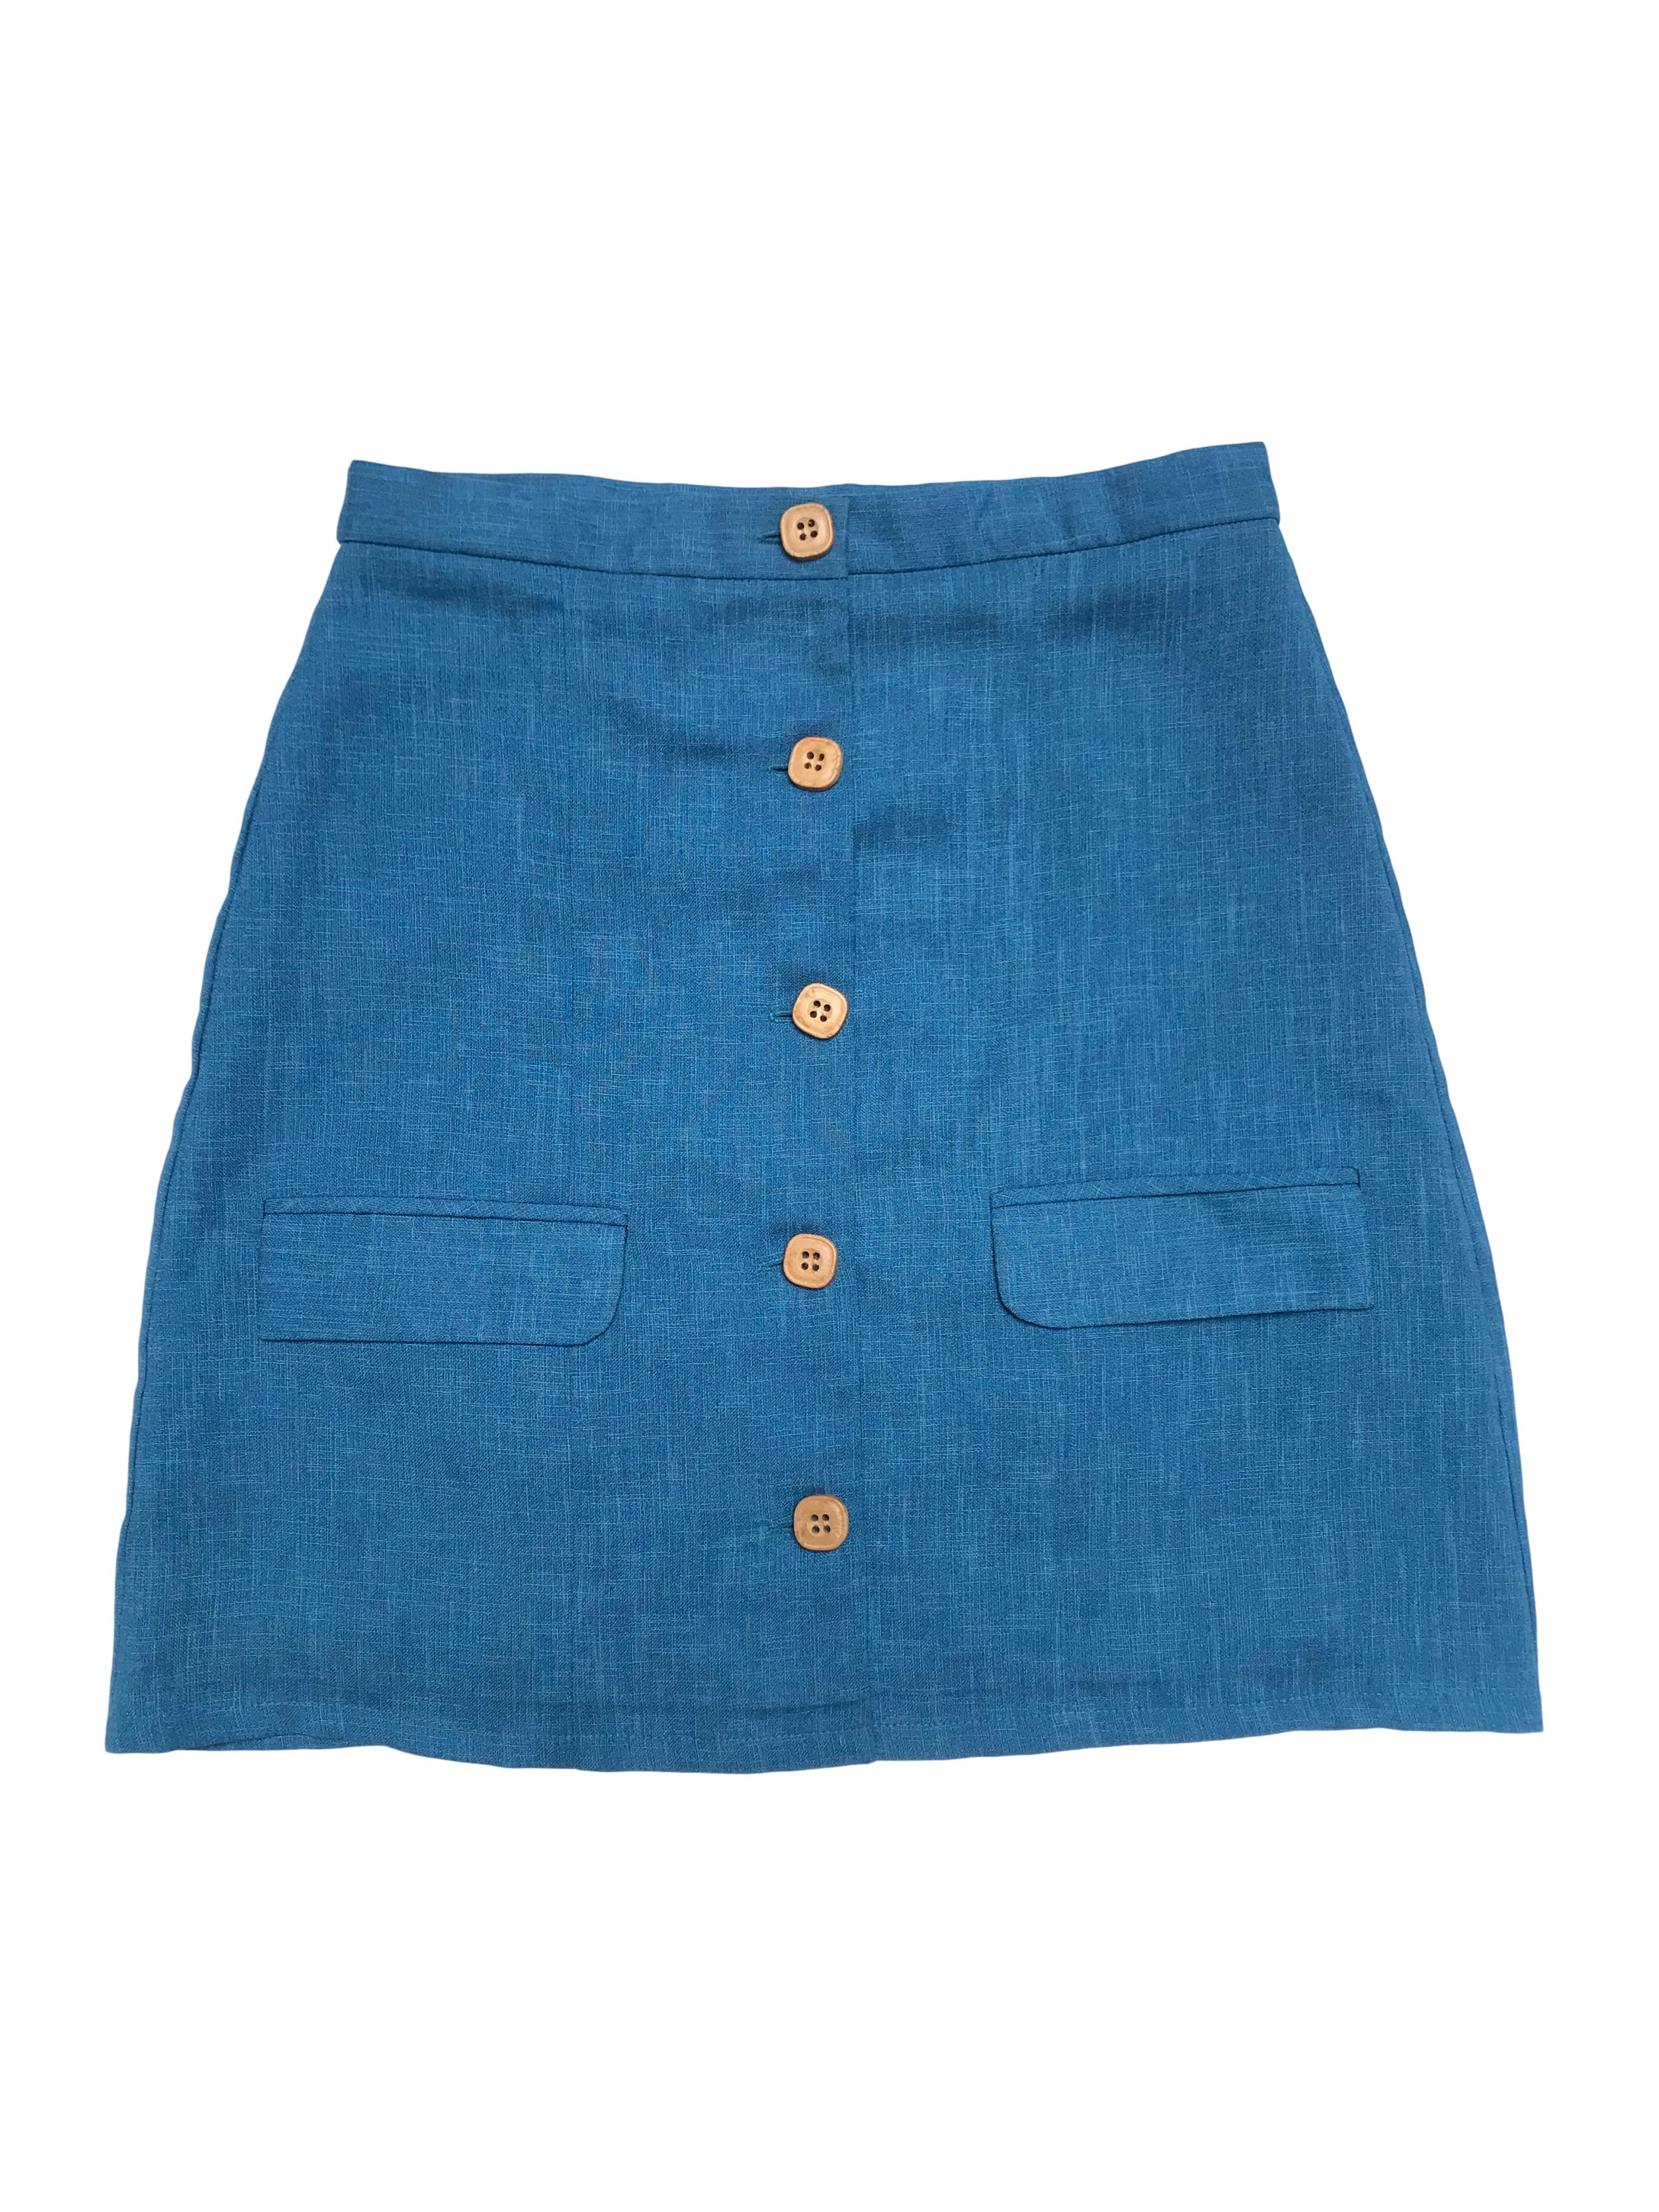 Falda vintage upcycled azul tipo lino , fila de botones de madera al centro, lleva forro. Cintura 74cm Largo 50cm